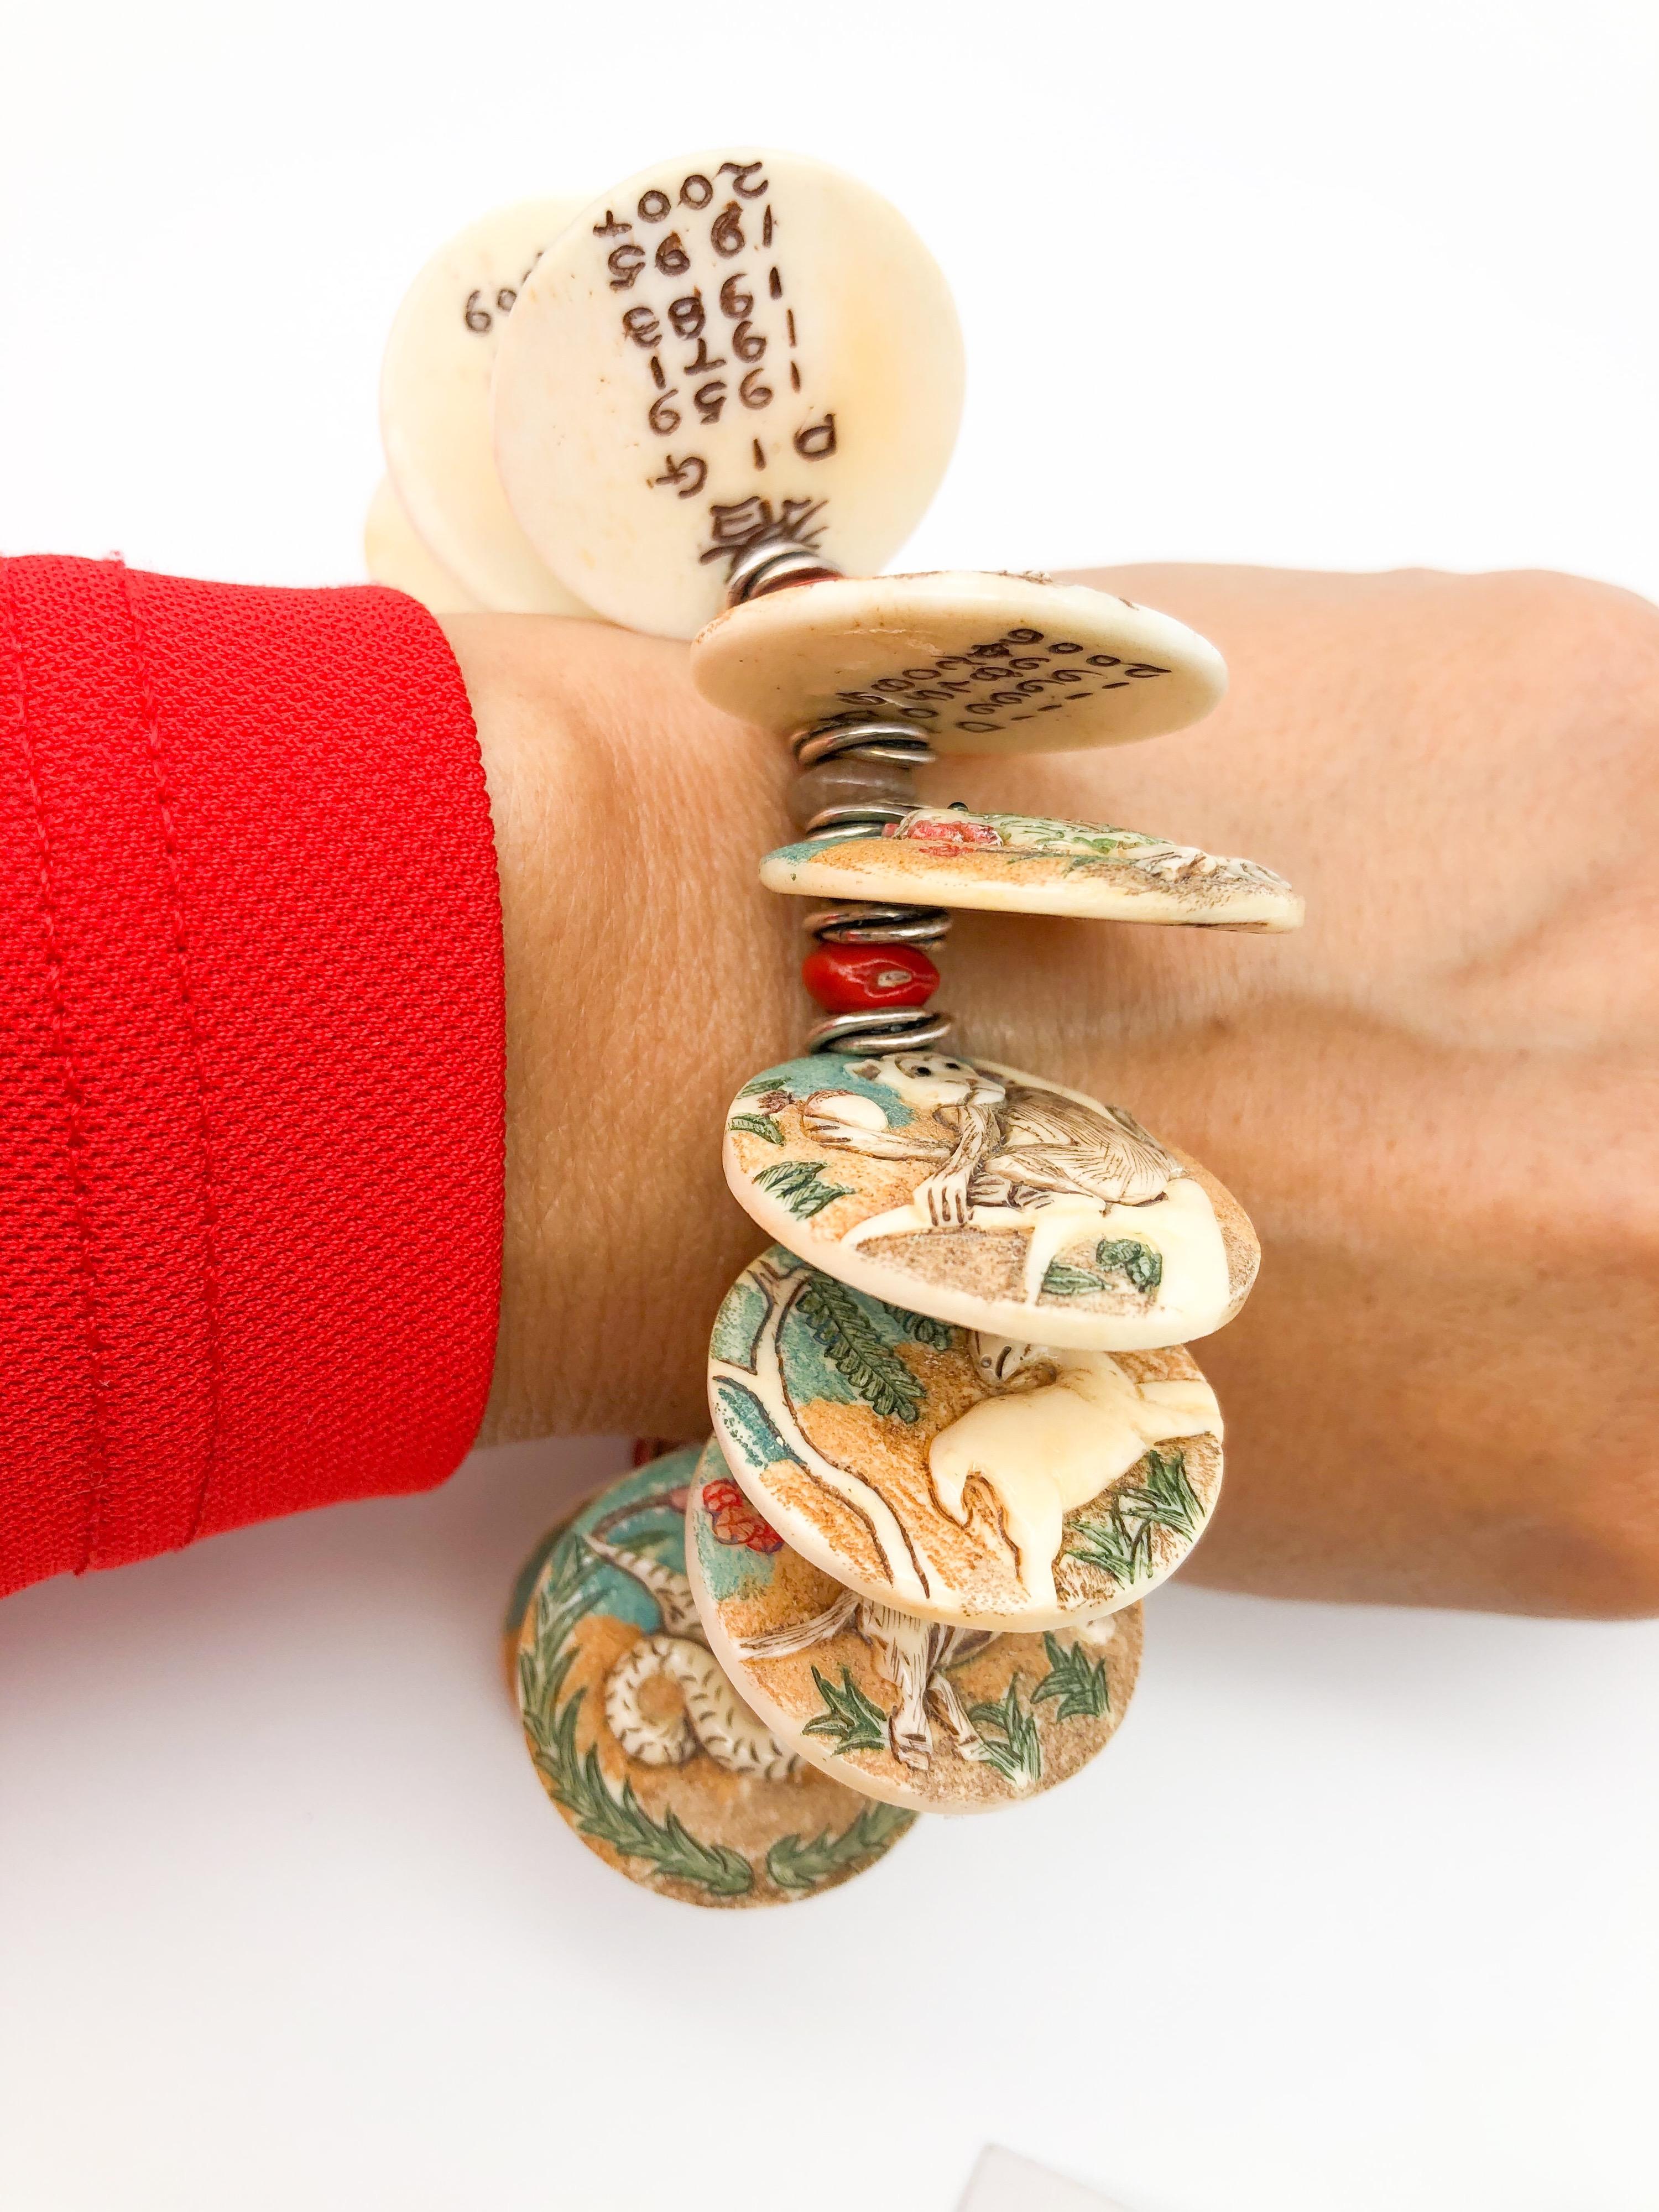 Einzigartig
Außergewöhnlich schön. Chinesisches Bettelarmband, verziert mit bunten, handbemalten, geschnitzten Knochentieren der 12 chinesischen Tierkreiszeichen. Die zwölf handgemalten Tierkreiszeichen, die in Knochen geschnitzt sind, werden durch